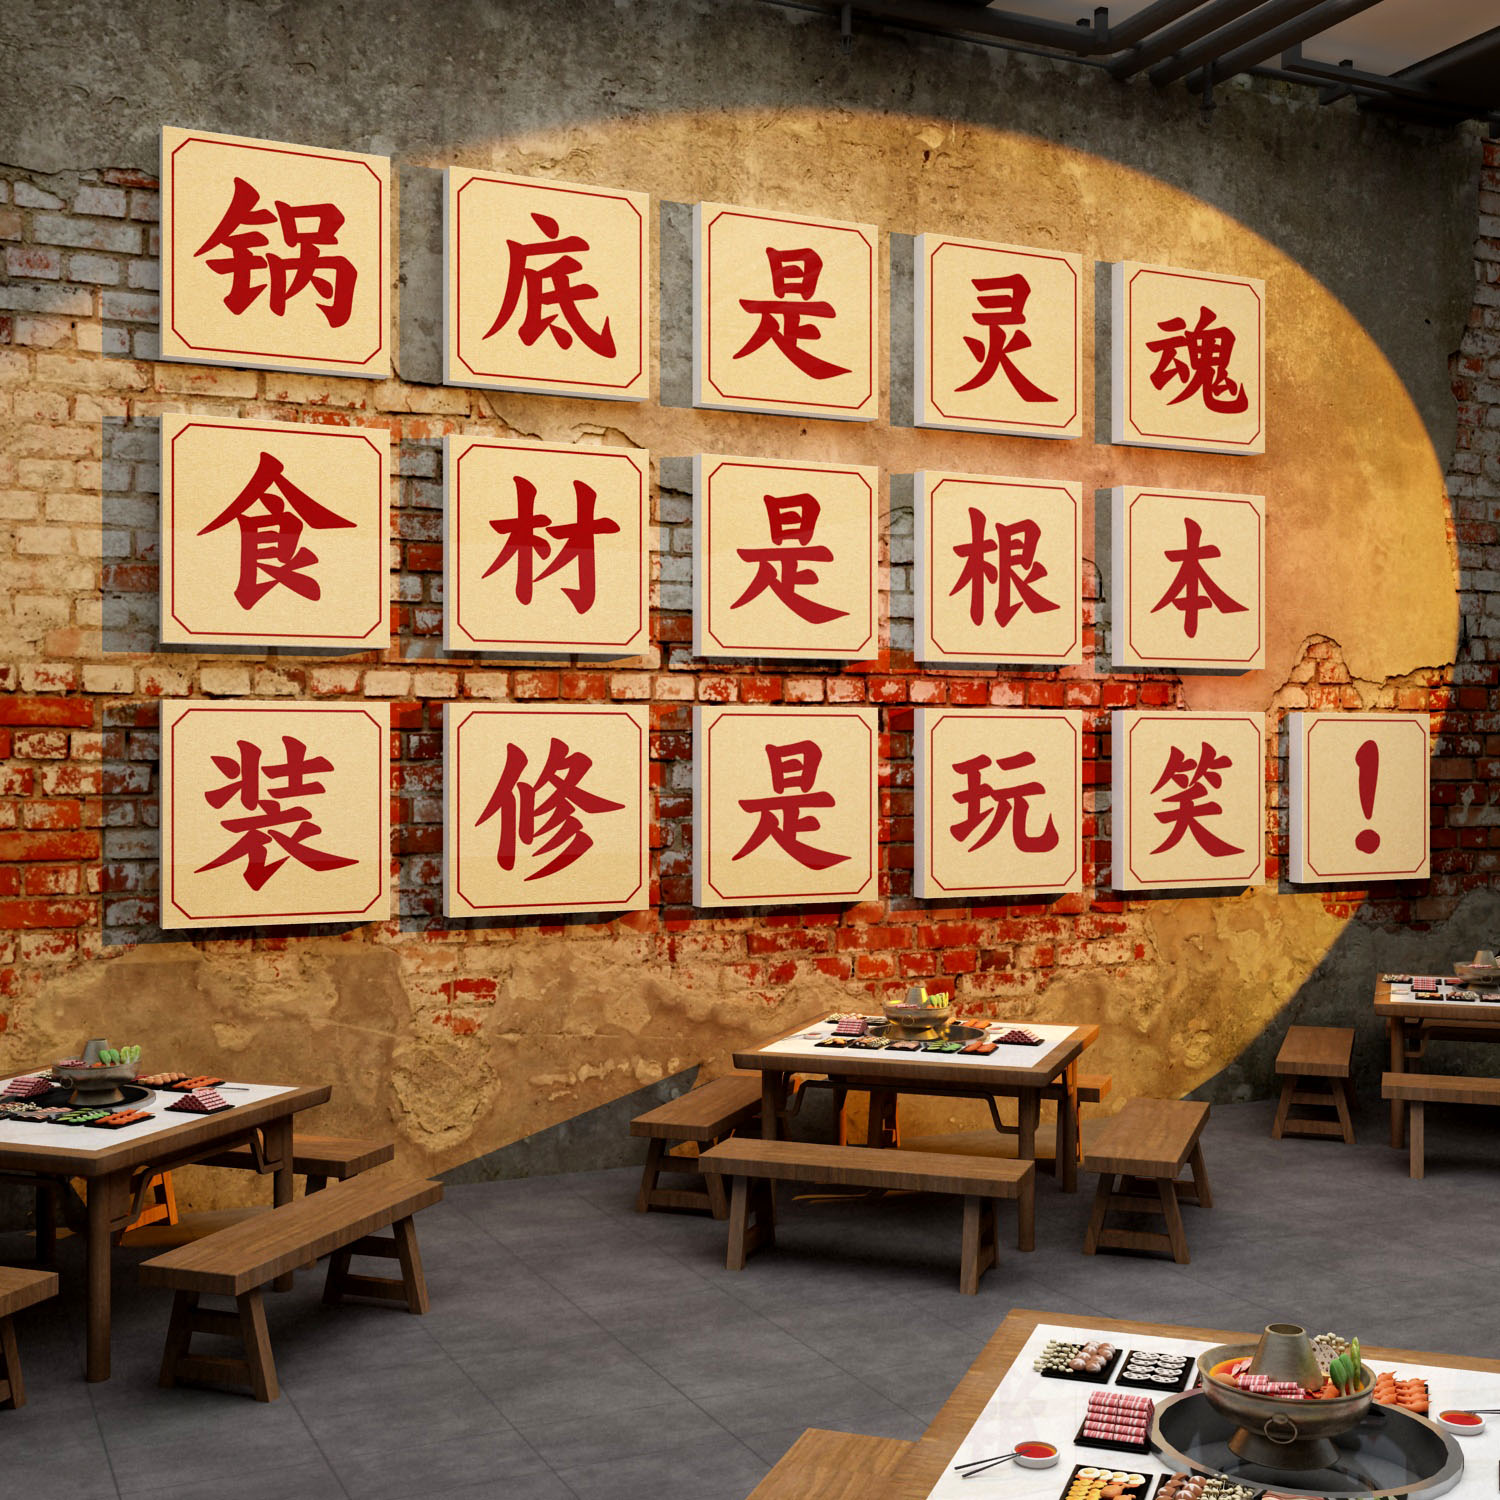 火锅店墙面装饰创意画文化网红旋转市井风格复古饭店餐饮壁纸贴画